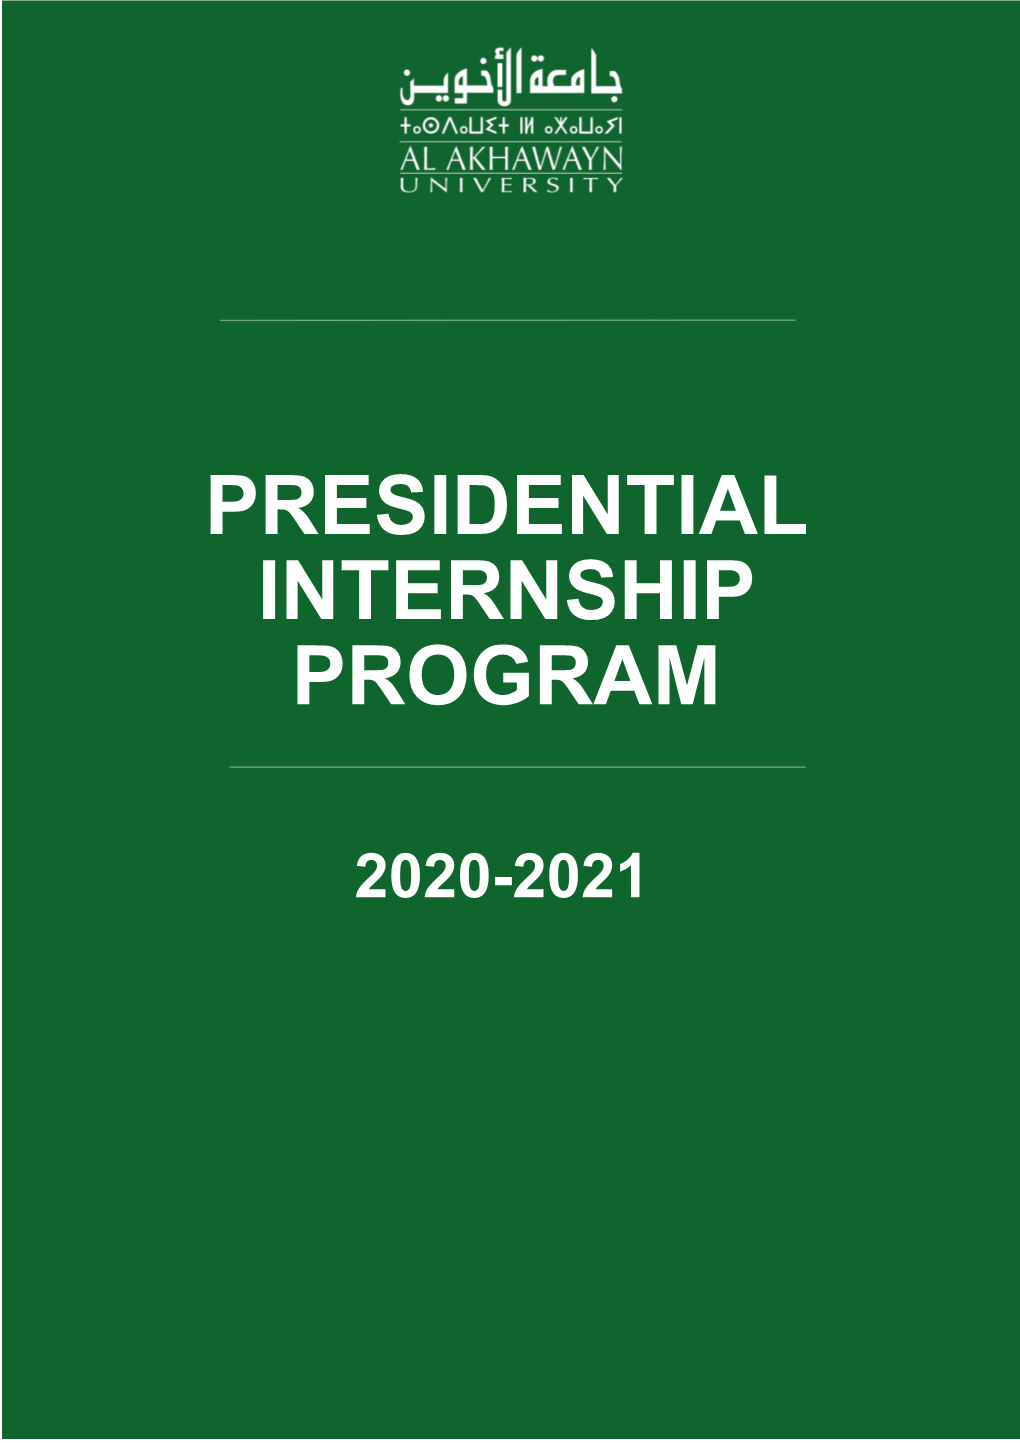 Presidential Internship Program